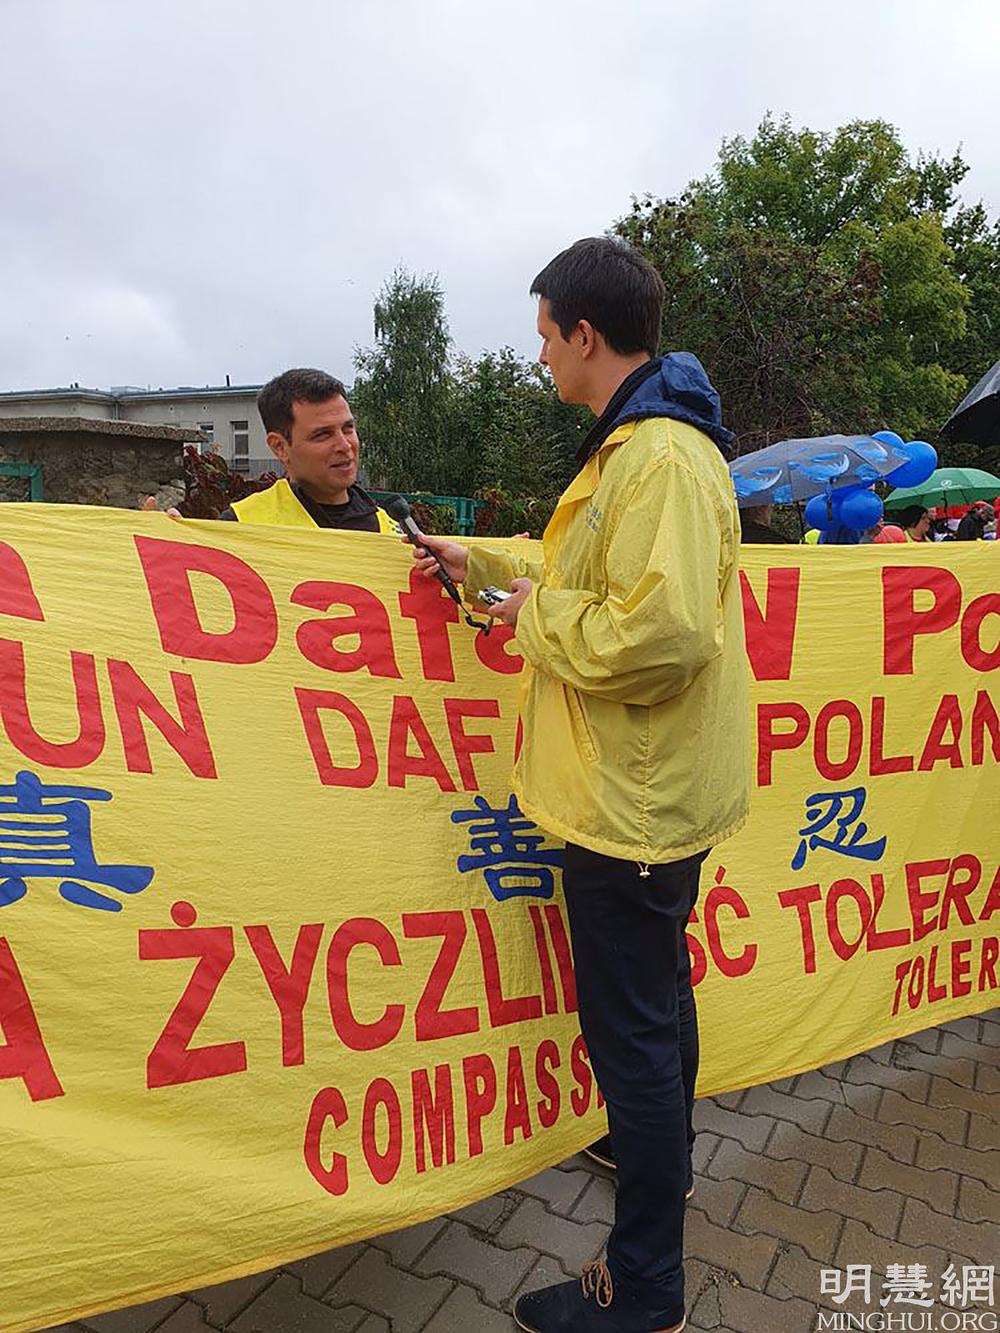 Gosp. Andrés (lijevo) iz Argentine je slučajno bio u posjeti Poljskoj pa je odletio iz Varšave kako bi učestvovao u paradi.